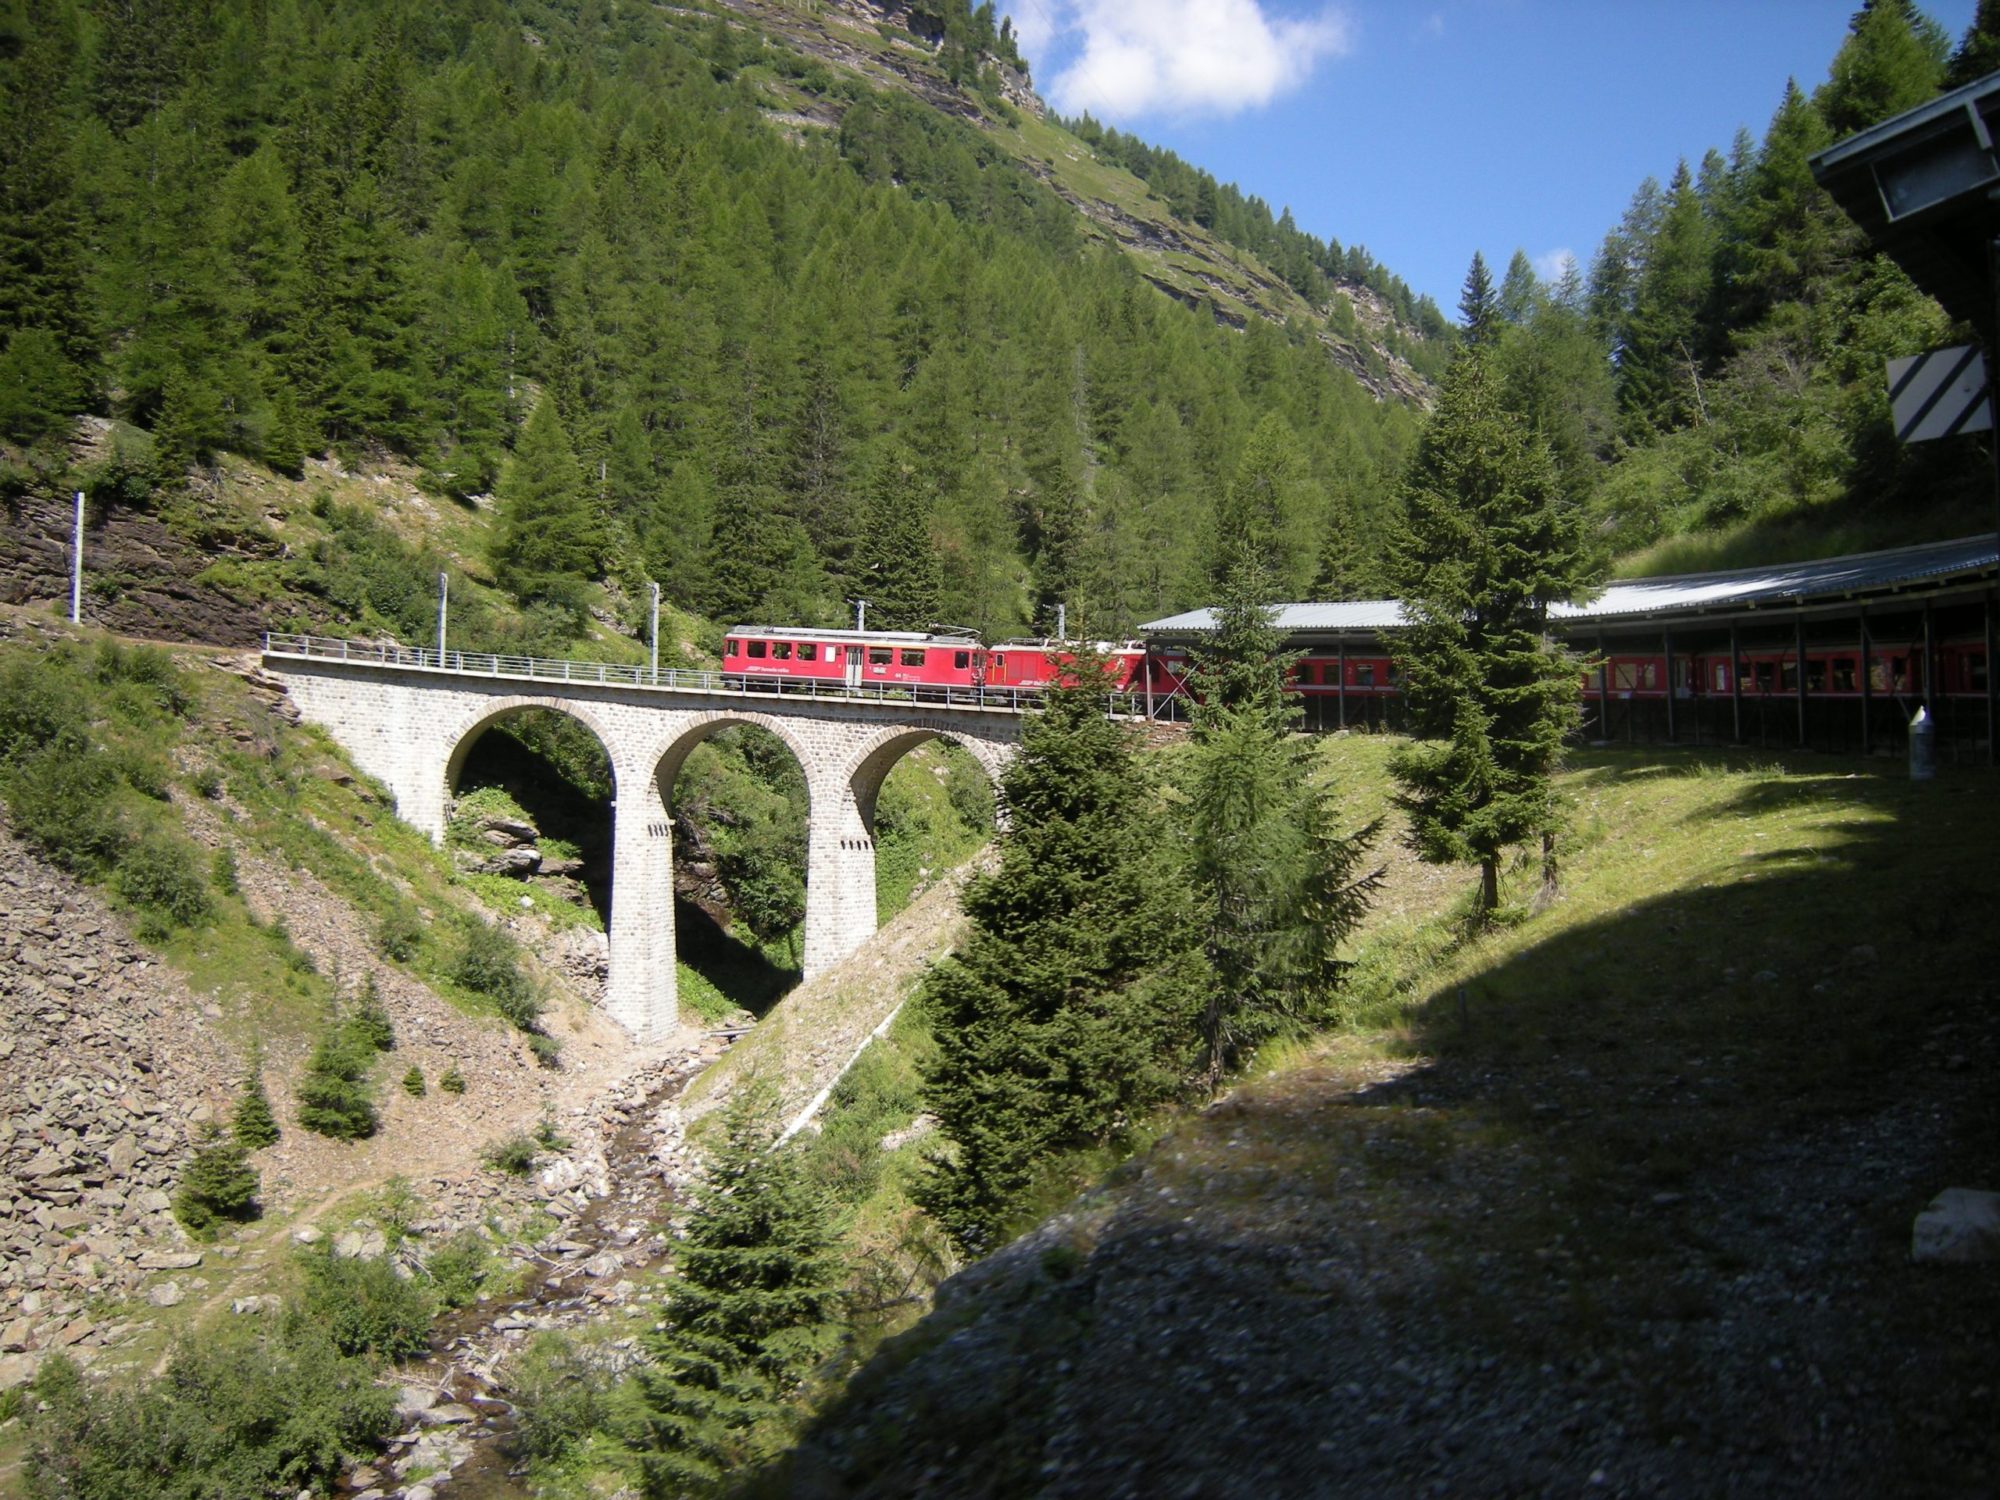 Ponte ferrovia retica 2009